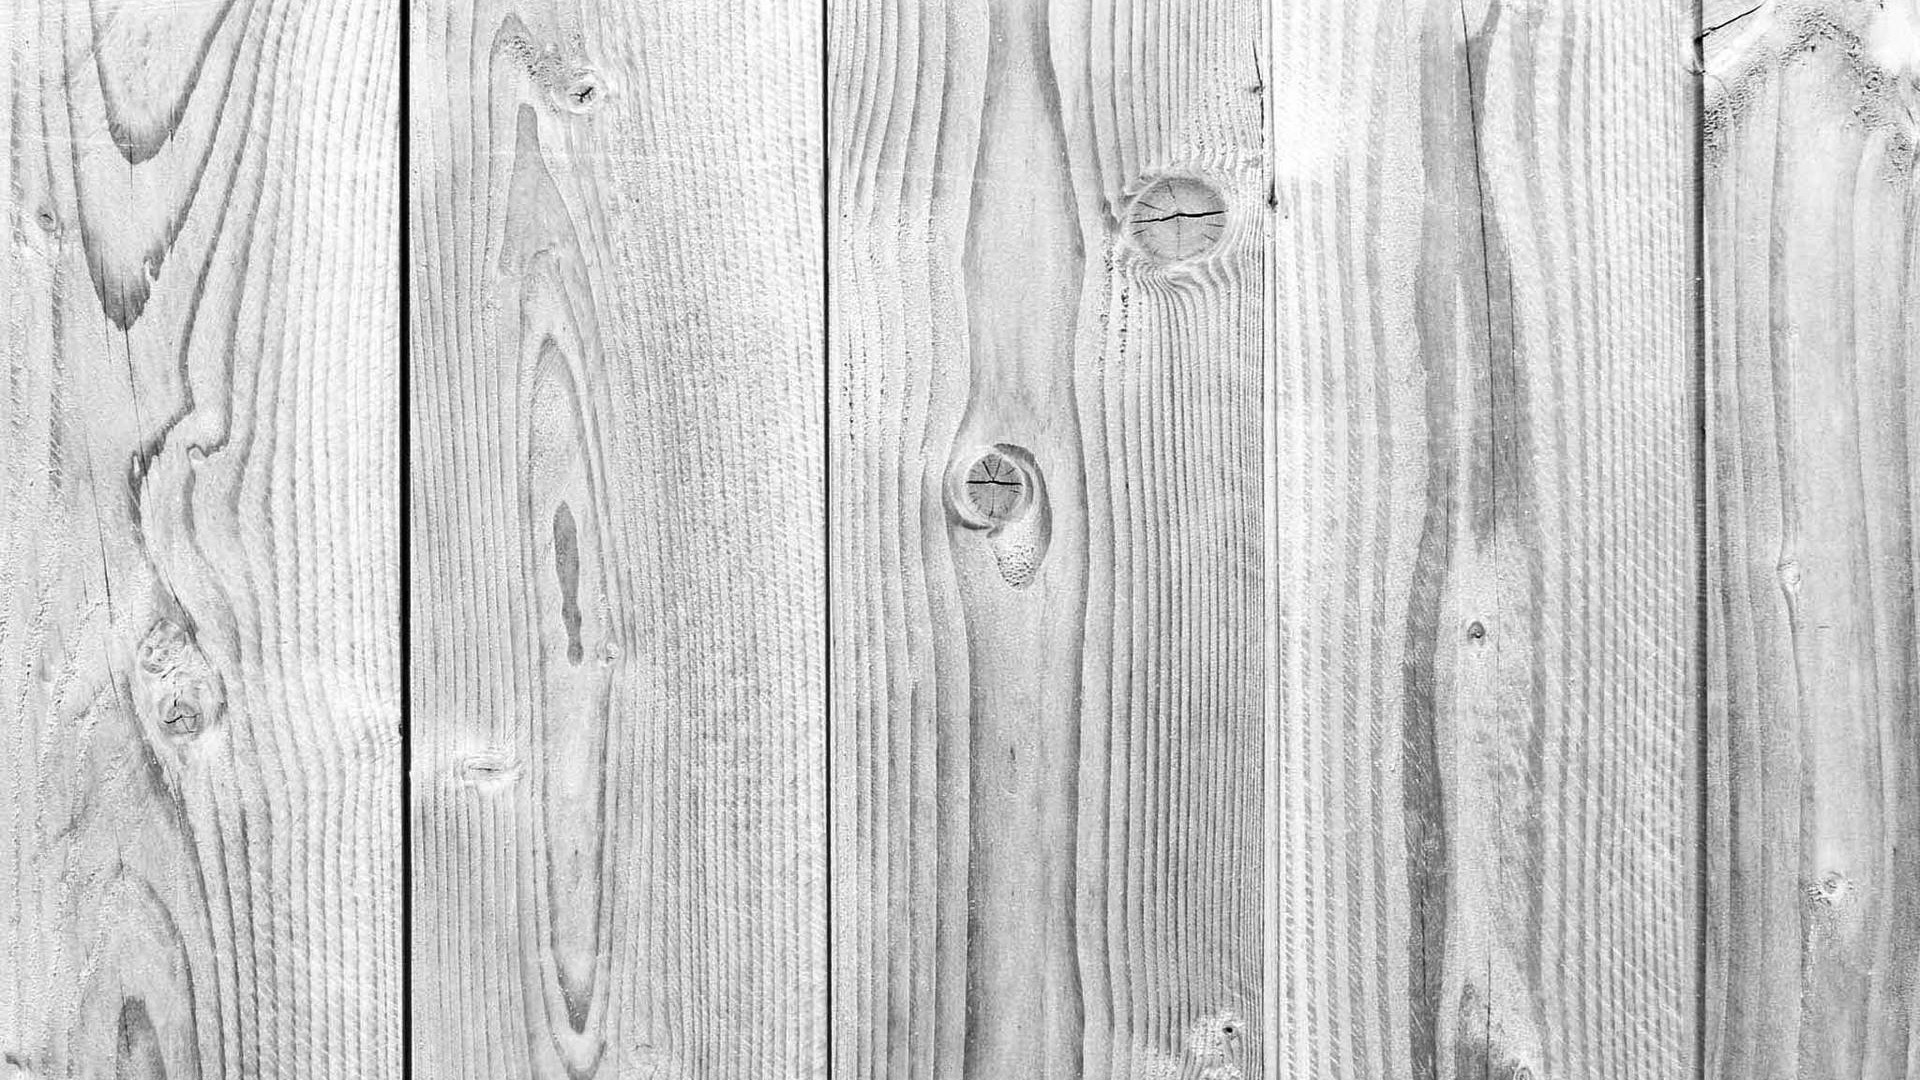 Hình nền gỗ vân (Wood Grain Wallpapers): Hình nền gỗ vân là sự kết hợp tinh tế giữa sắc vân gỗ và công nghệ hiện đại, tạo ra những mẫu hình nền độc đáo nhất. Hãy sử dụng để tái tạo không gian tràn đầy tính thẩm mỹ và đẳng cấp.